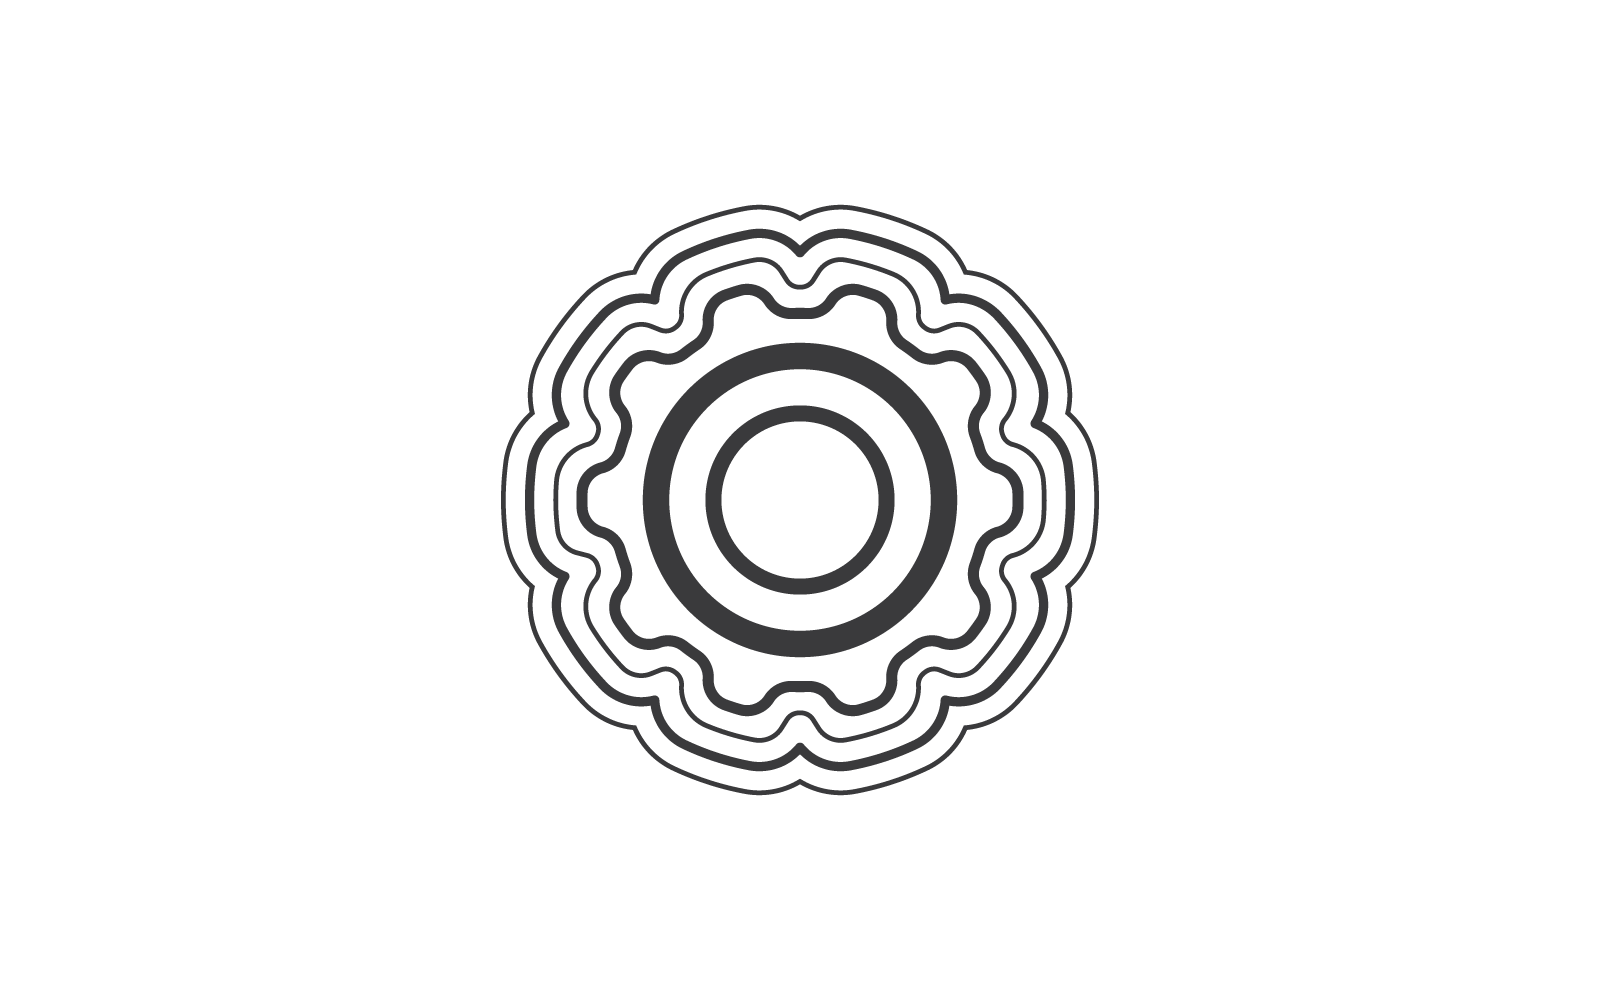 Muslim ornament line icon vector flat design